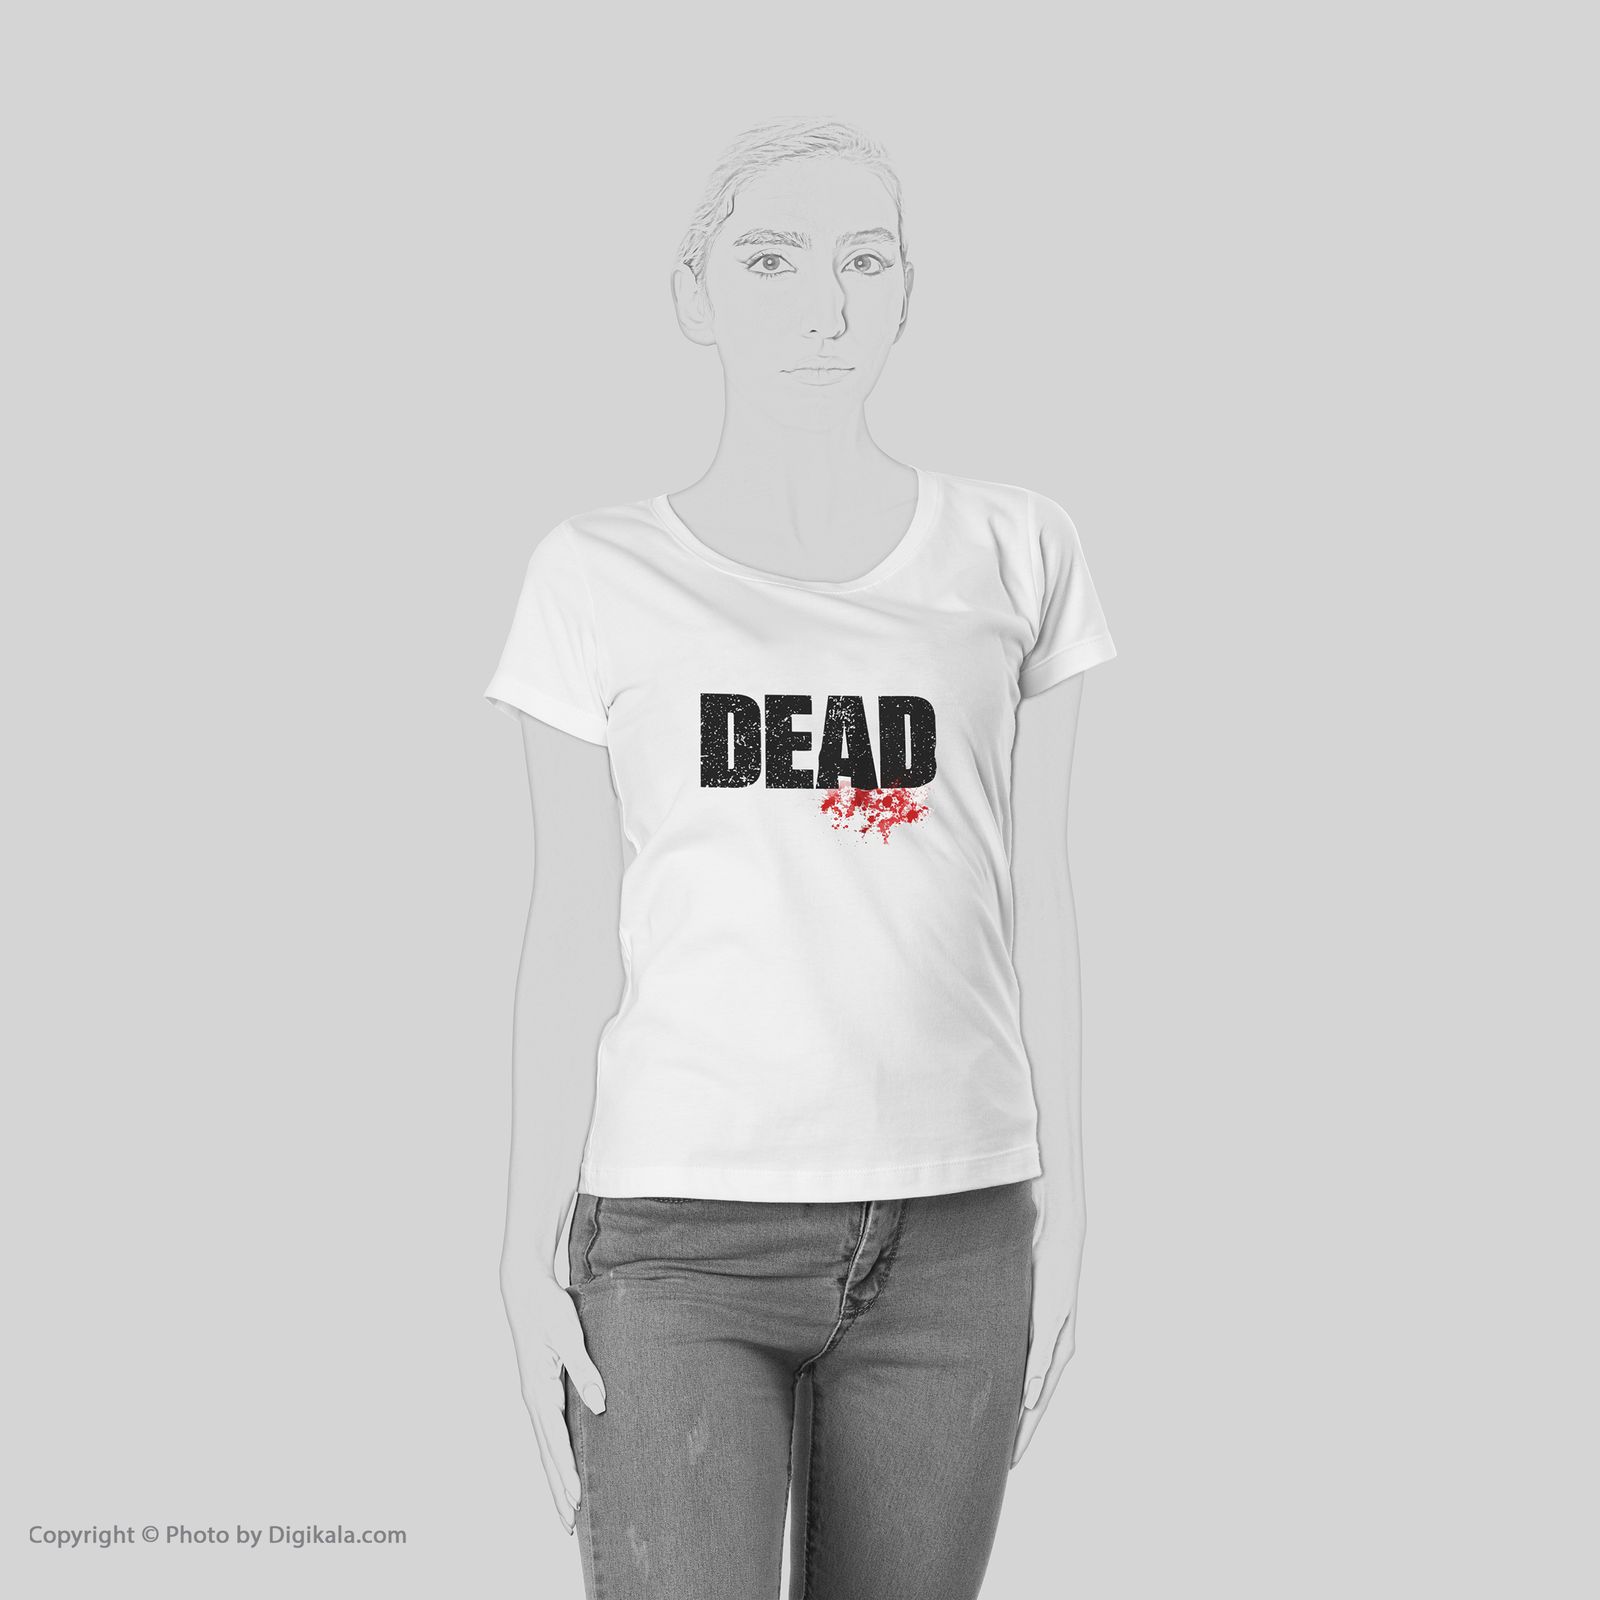 تی شرت یورپرینت به رسم طرح مرده کد 514 -  - 6